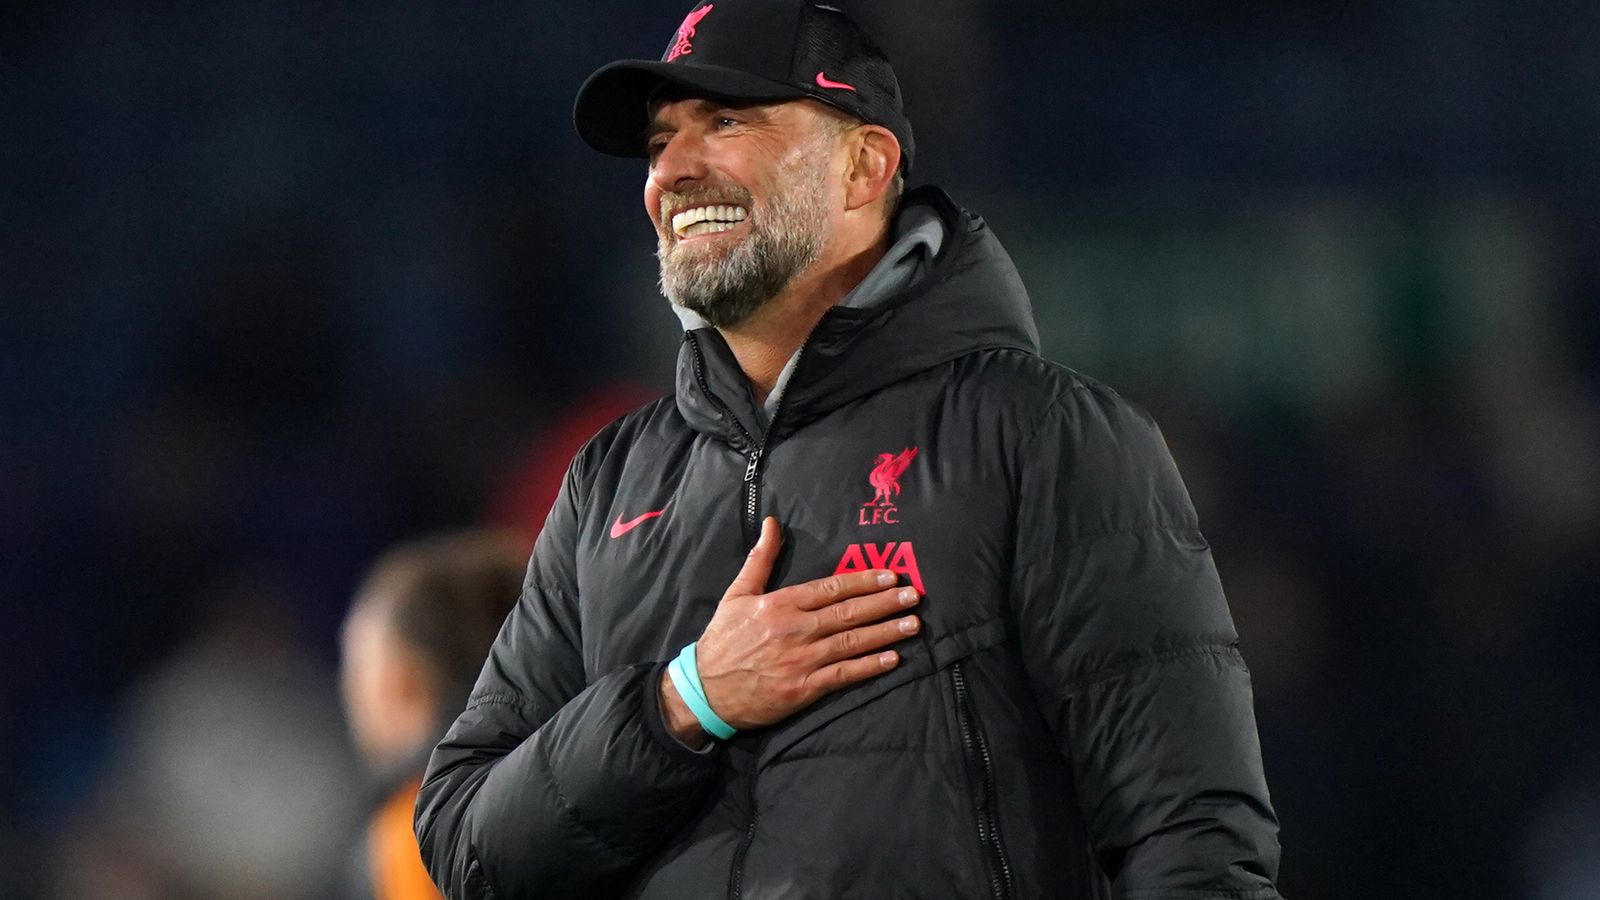 Exclusivo de Jurgen Klopp: el entrenador del Liverpool dice que el club superó la ‘crisis’ y mejorará con la experiencia |  Noticias de futbol